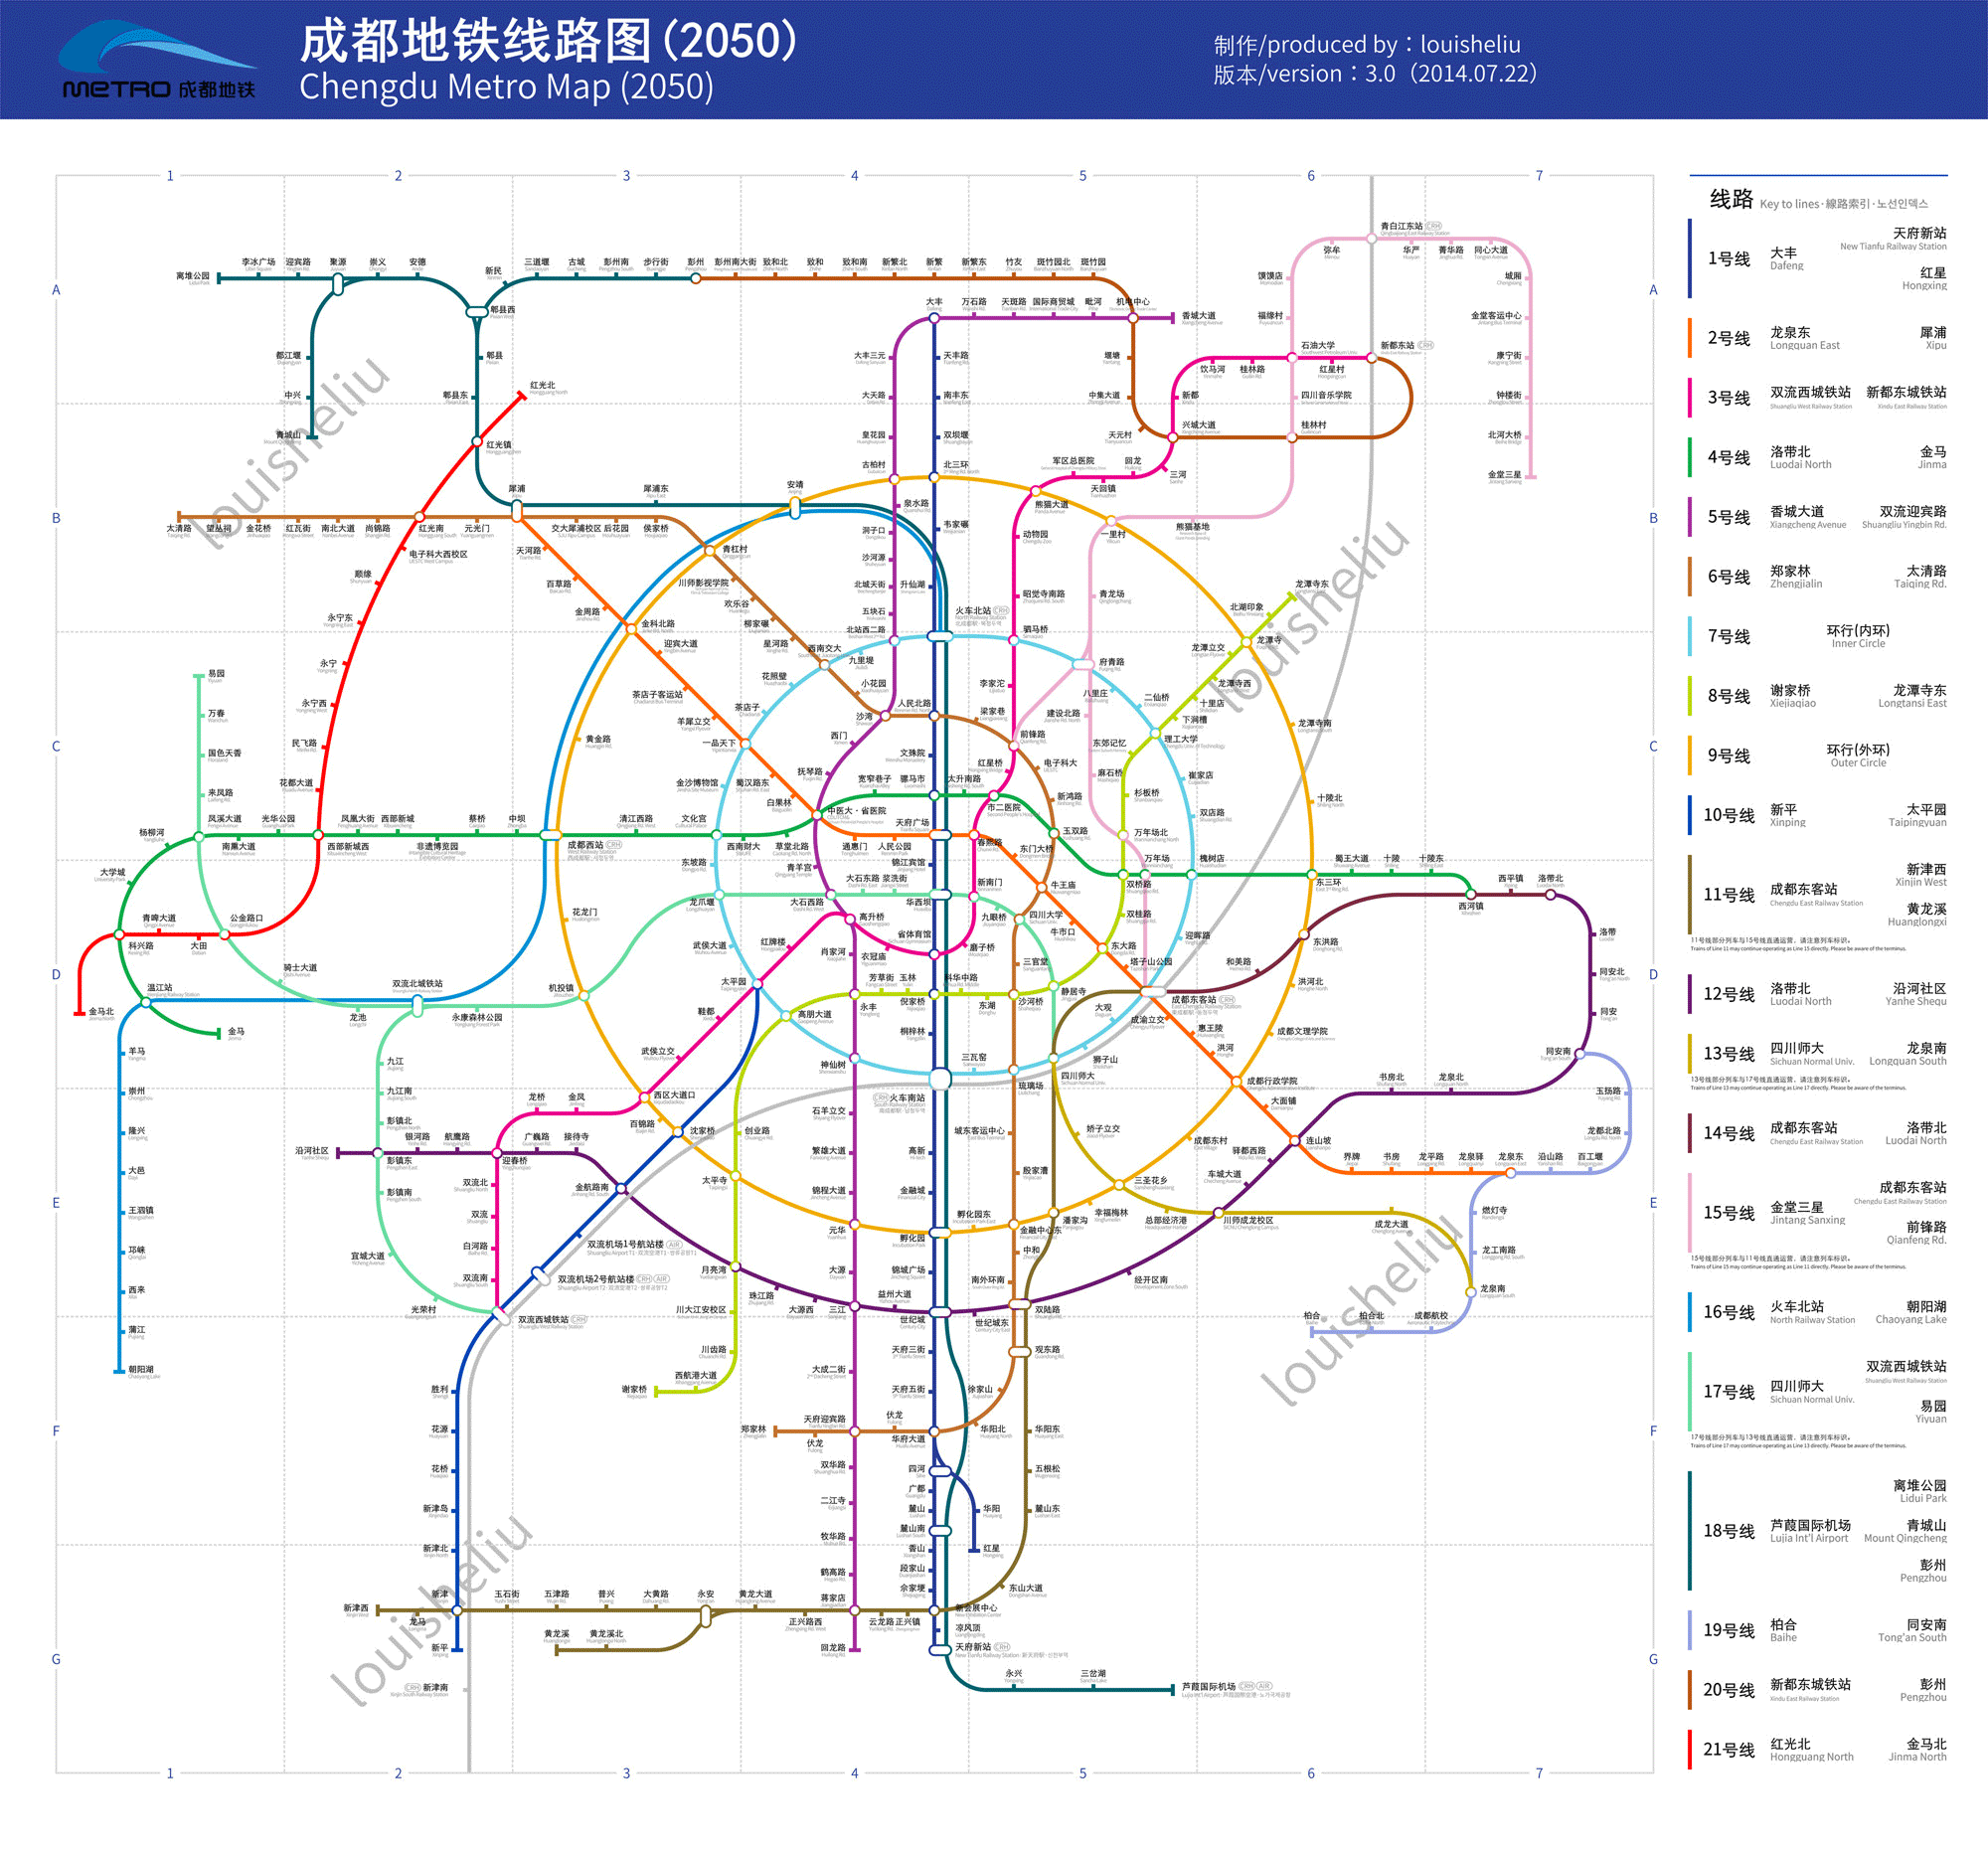 成都地铁最新规划:2020开通14条线路 15条新线路开建!